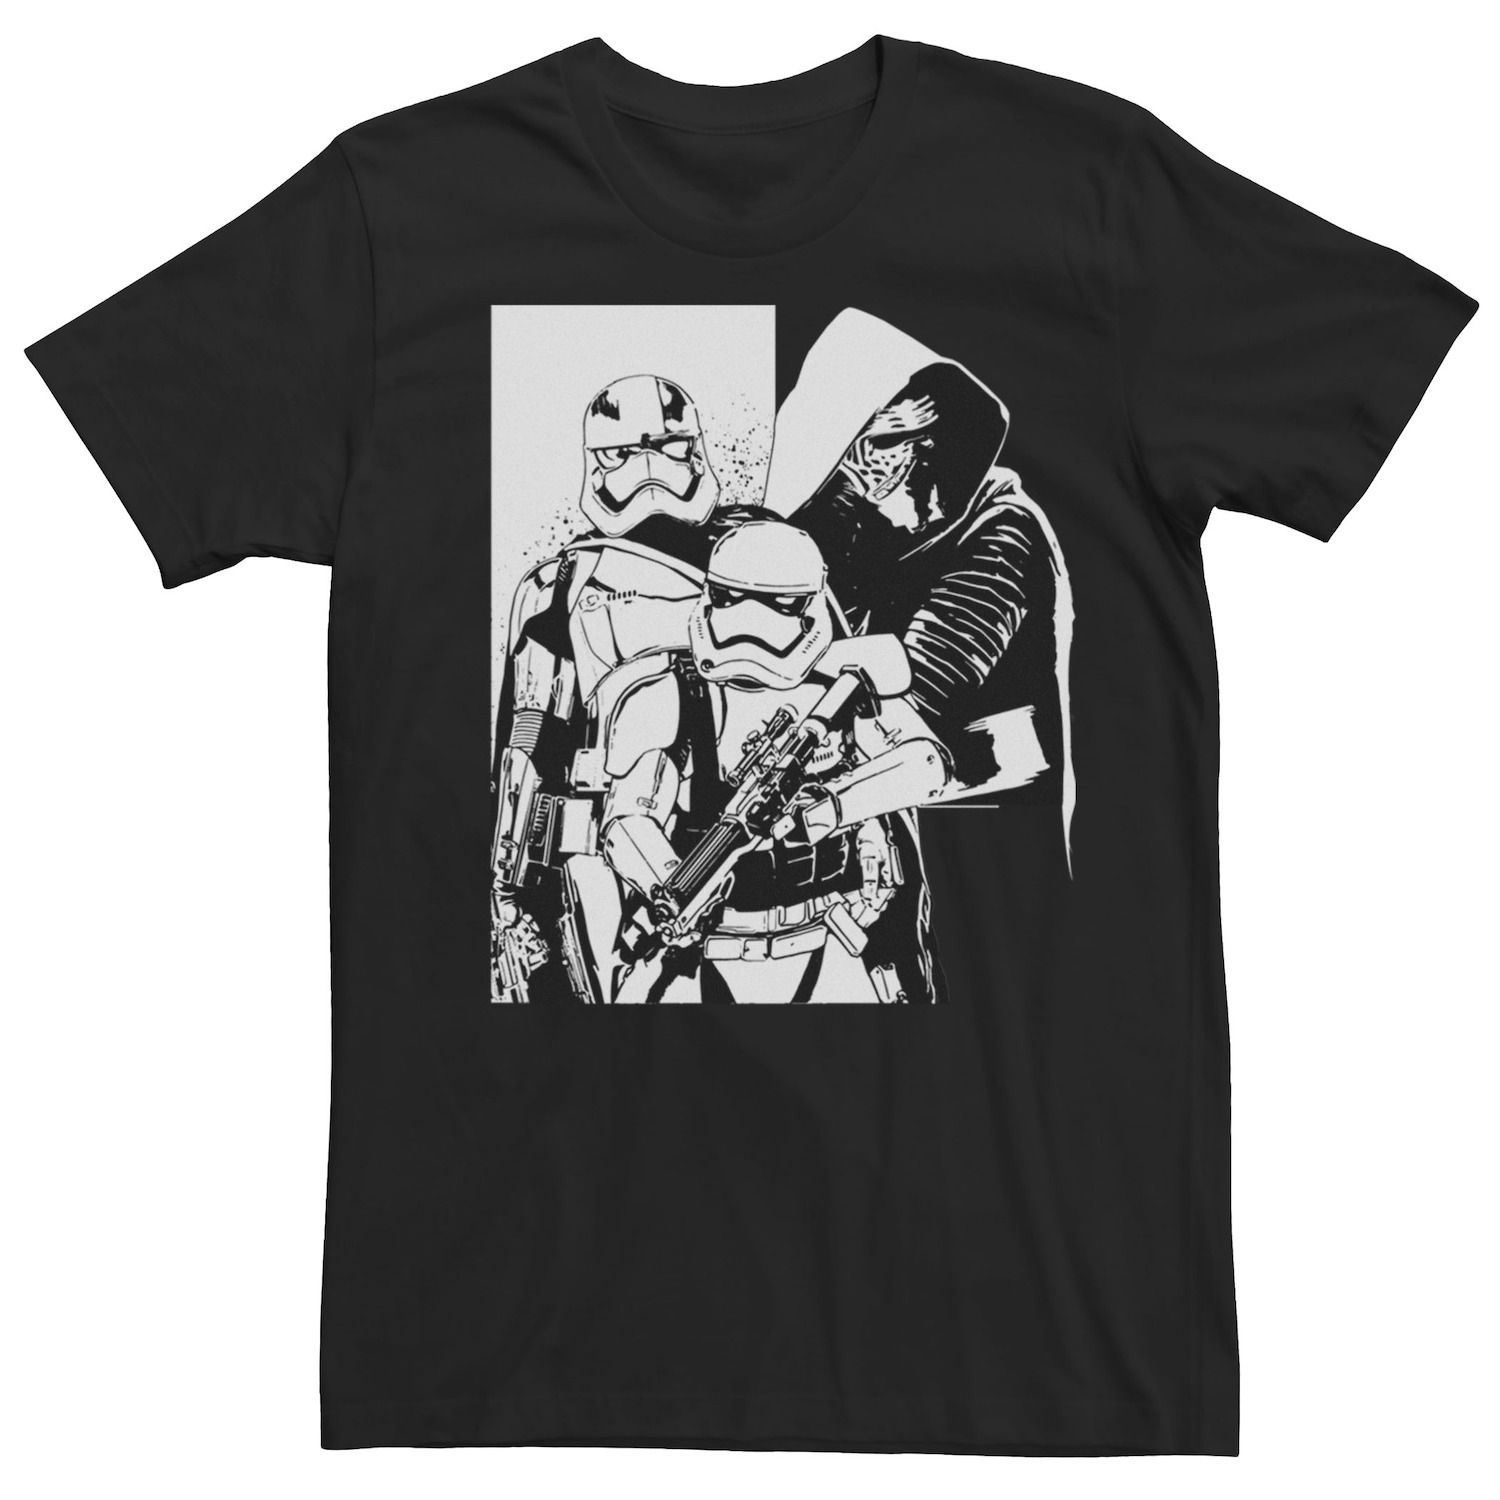 Мужская футболка с портретом Kylo Ren & Stormtroopers Star Wars футболка good loot star wars kylo ren helmet мужская s